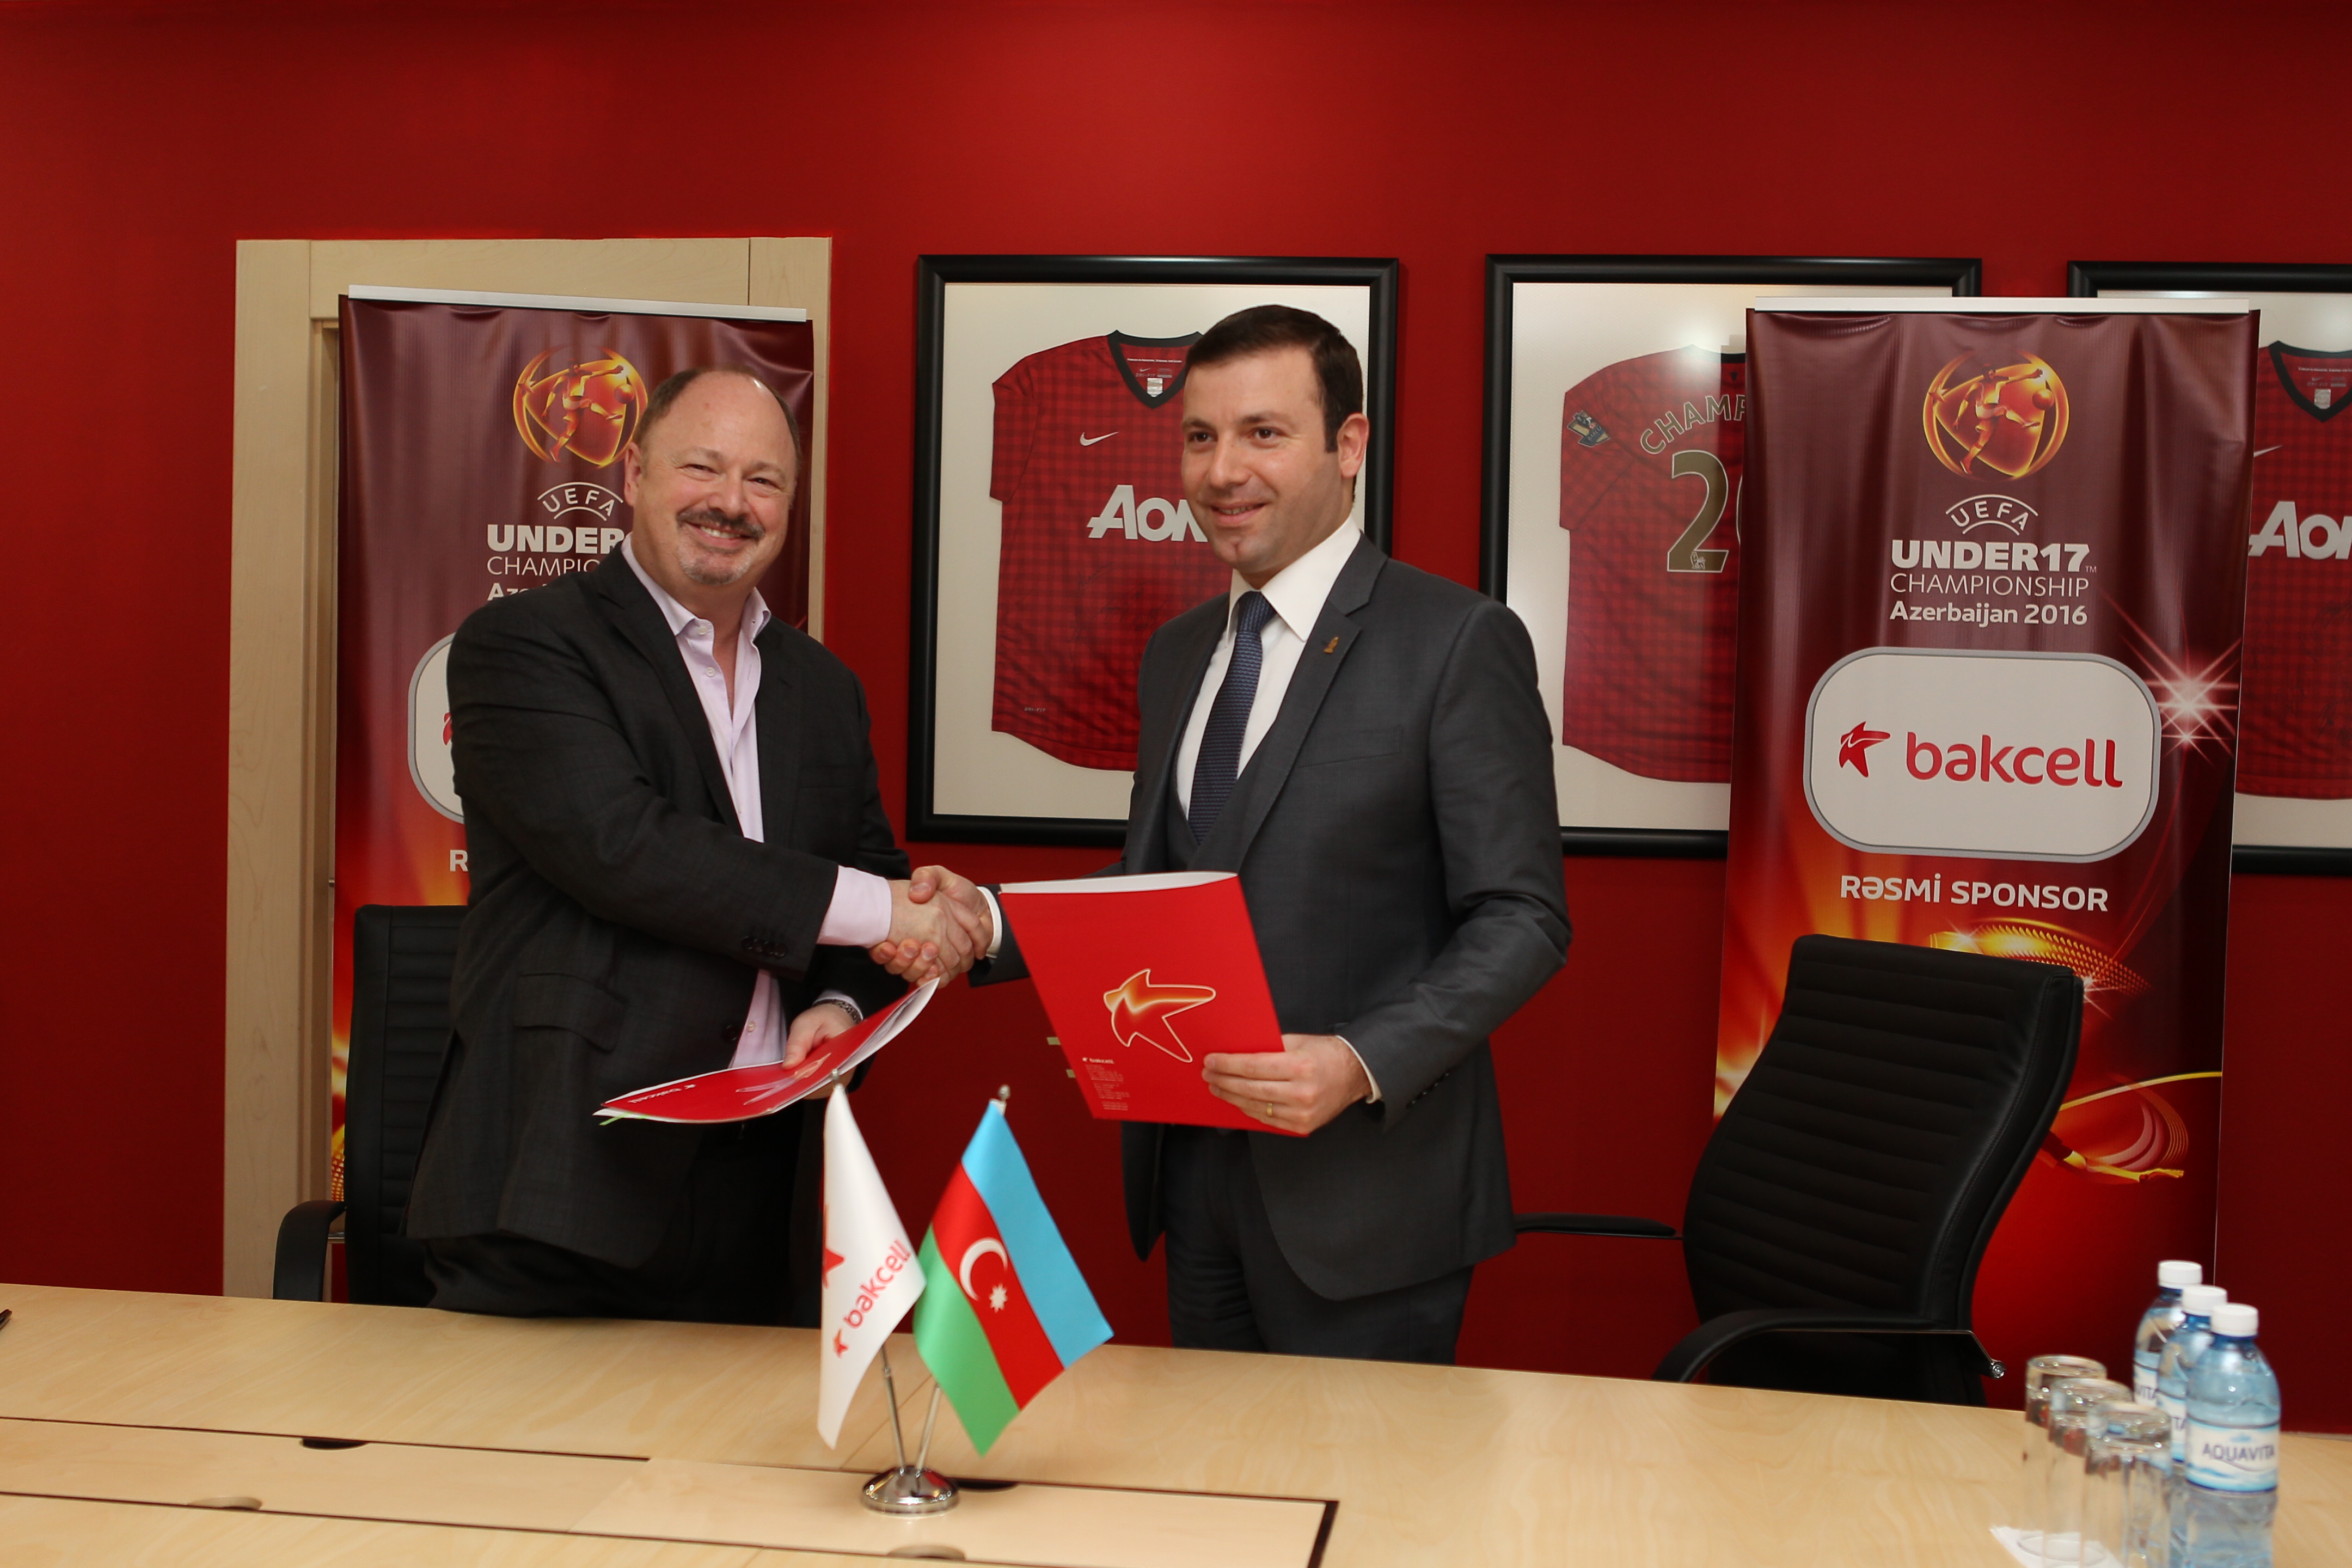 Bakcell “UEFA U-17 Avropa çempionatı Azərbaycan 2016”-nın rəsmi sponsoru oldu